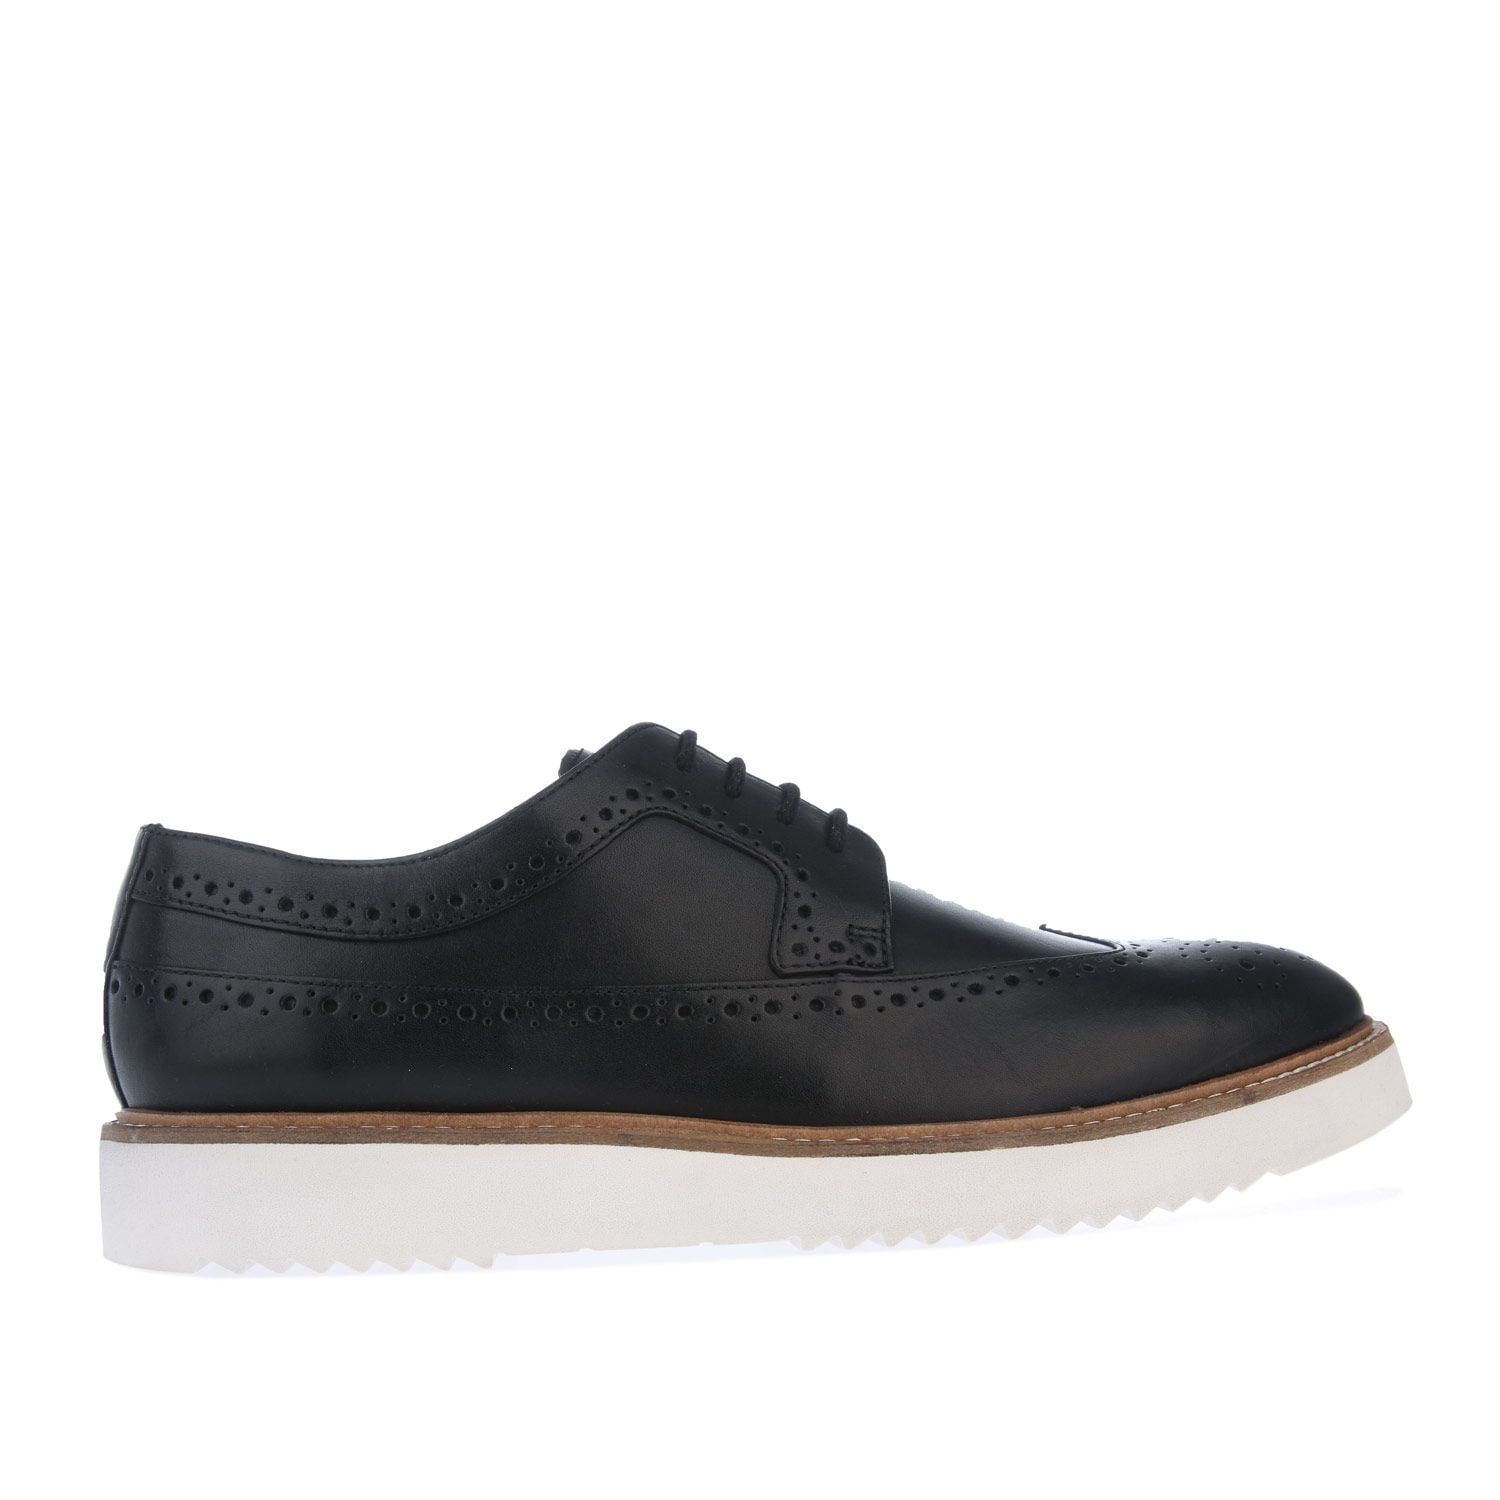 Men's Clarks Ernest Leather Shoes in Black